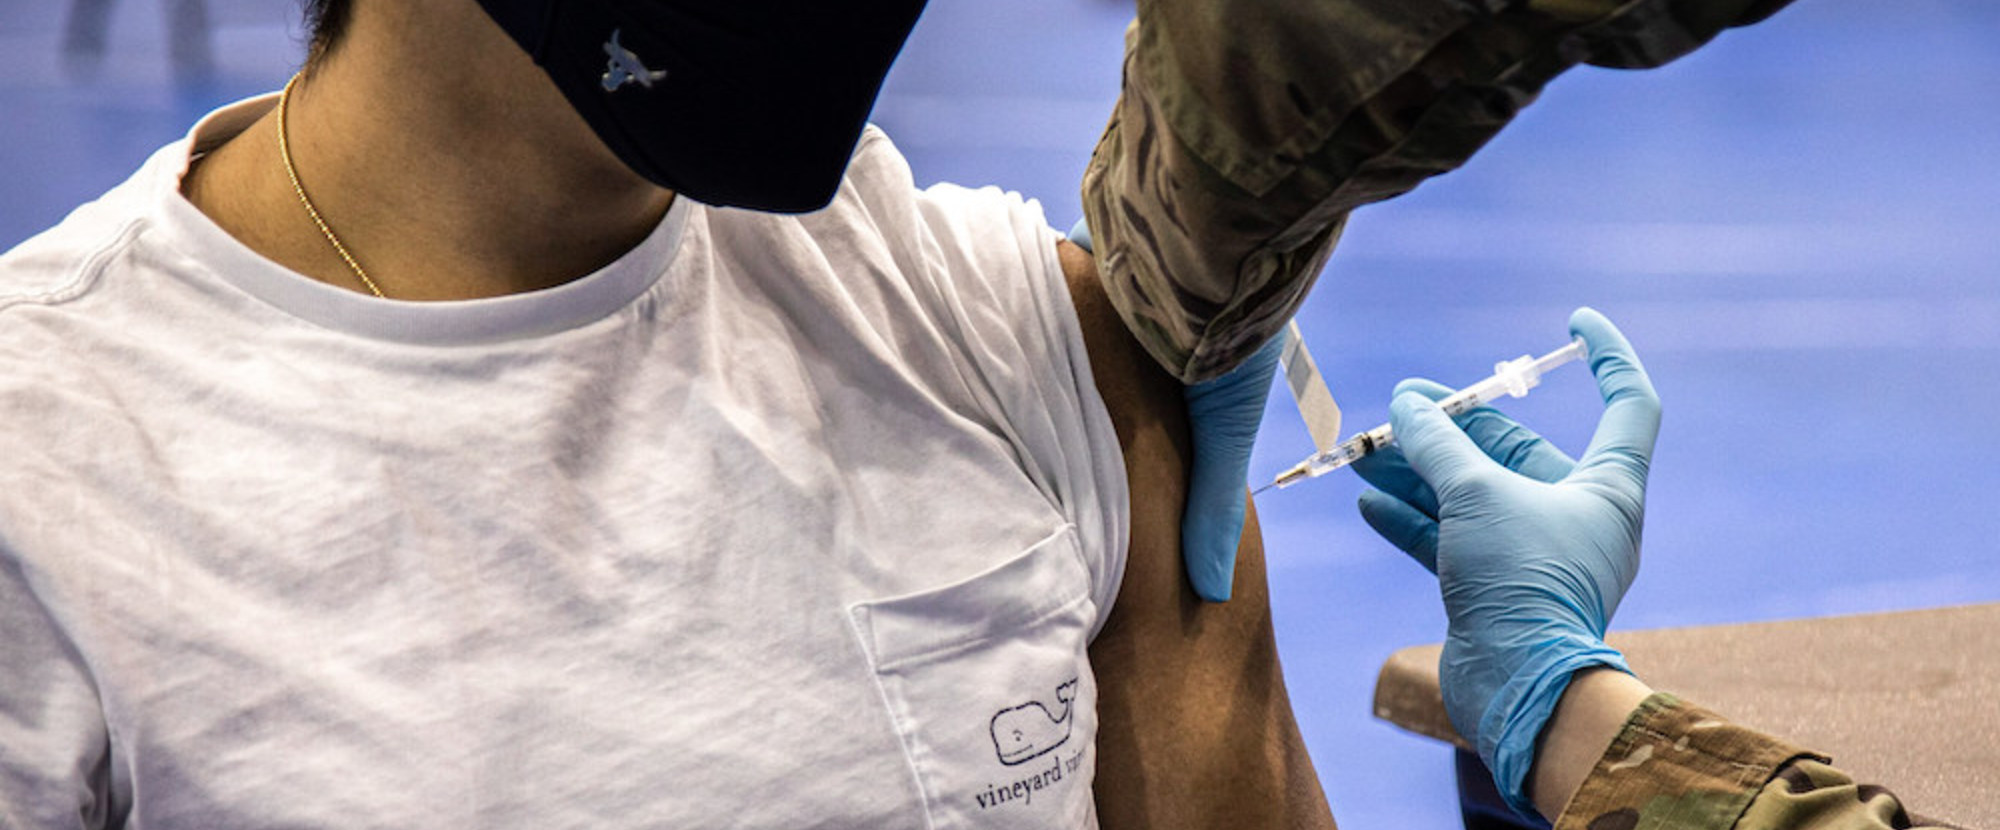 Ein Mitarbeiter des Gesundheitsdienstes verabreicht einem Universitätsstudenten der katholischen Marymount-Universität am 21. April 2021 eine Impfung gegen Covid-19 auf dem Campus der Universität in Arlington.